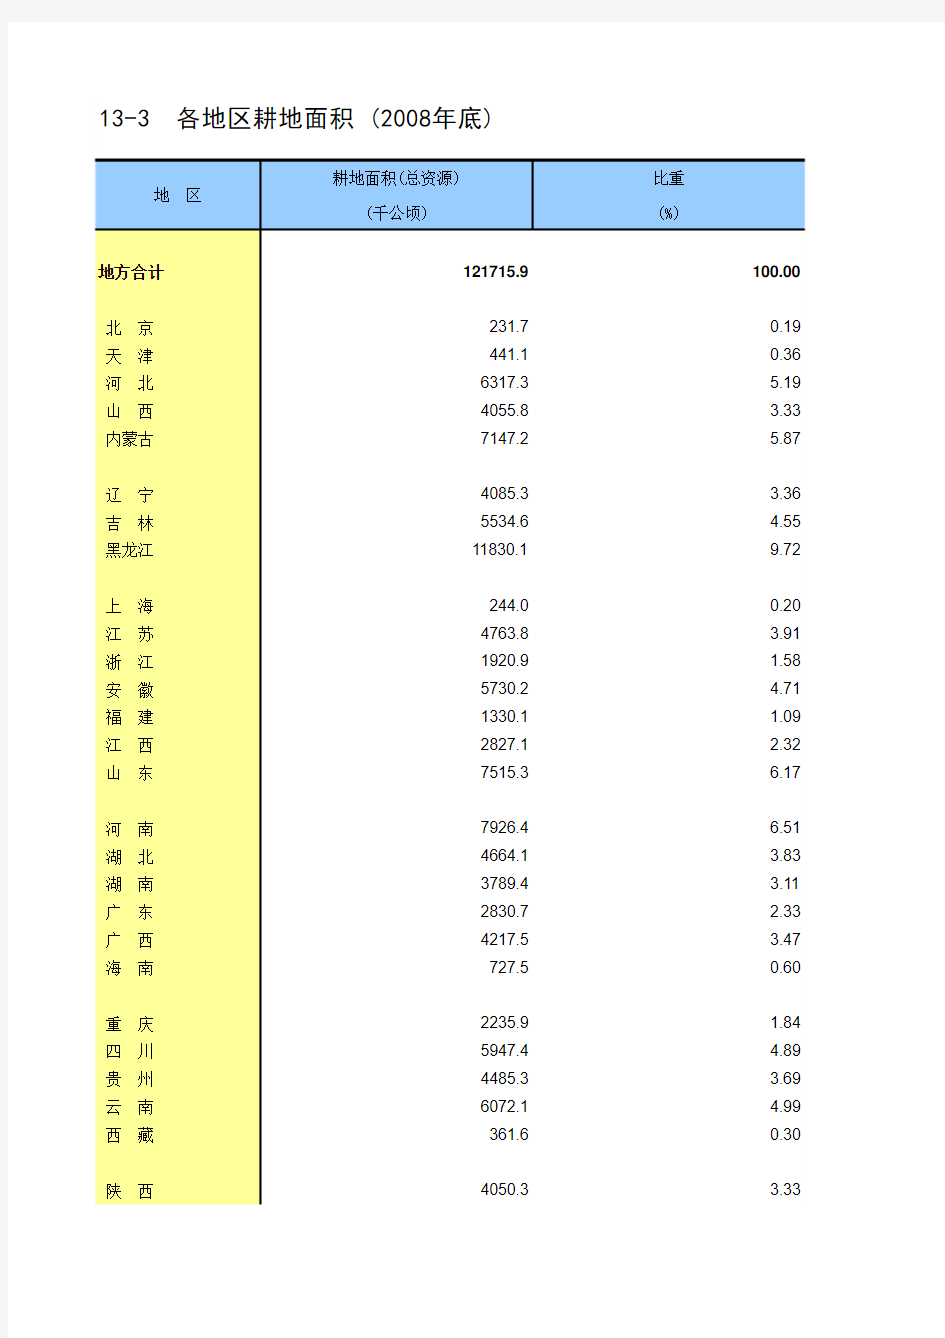 中国统计年鉴2010(excel完整版)